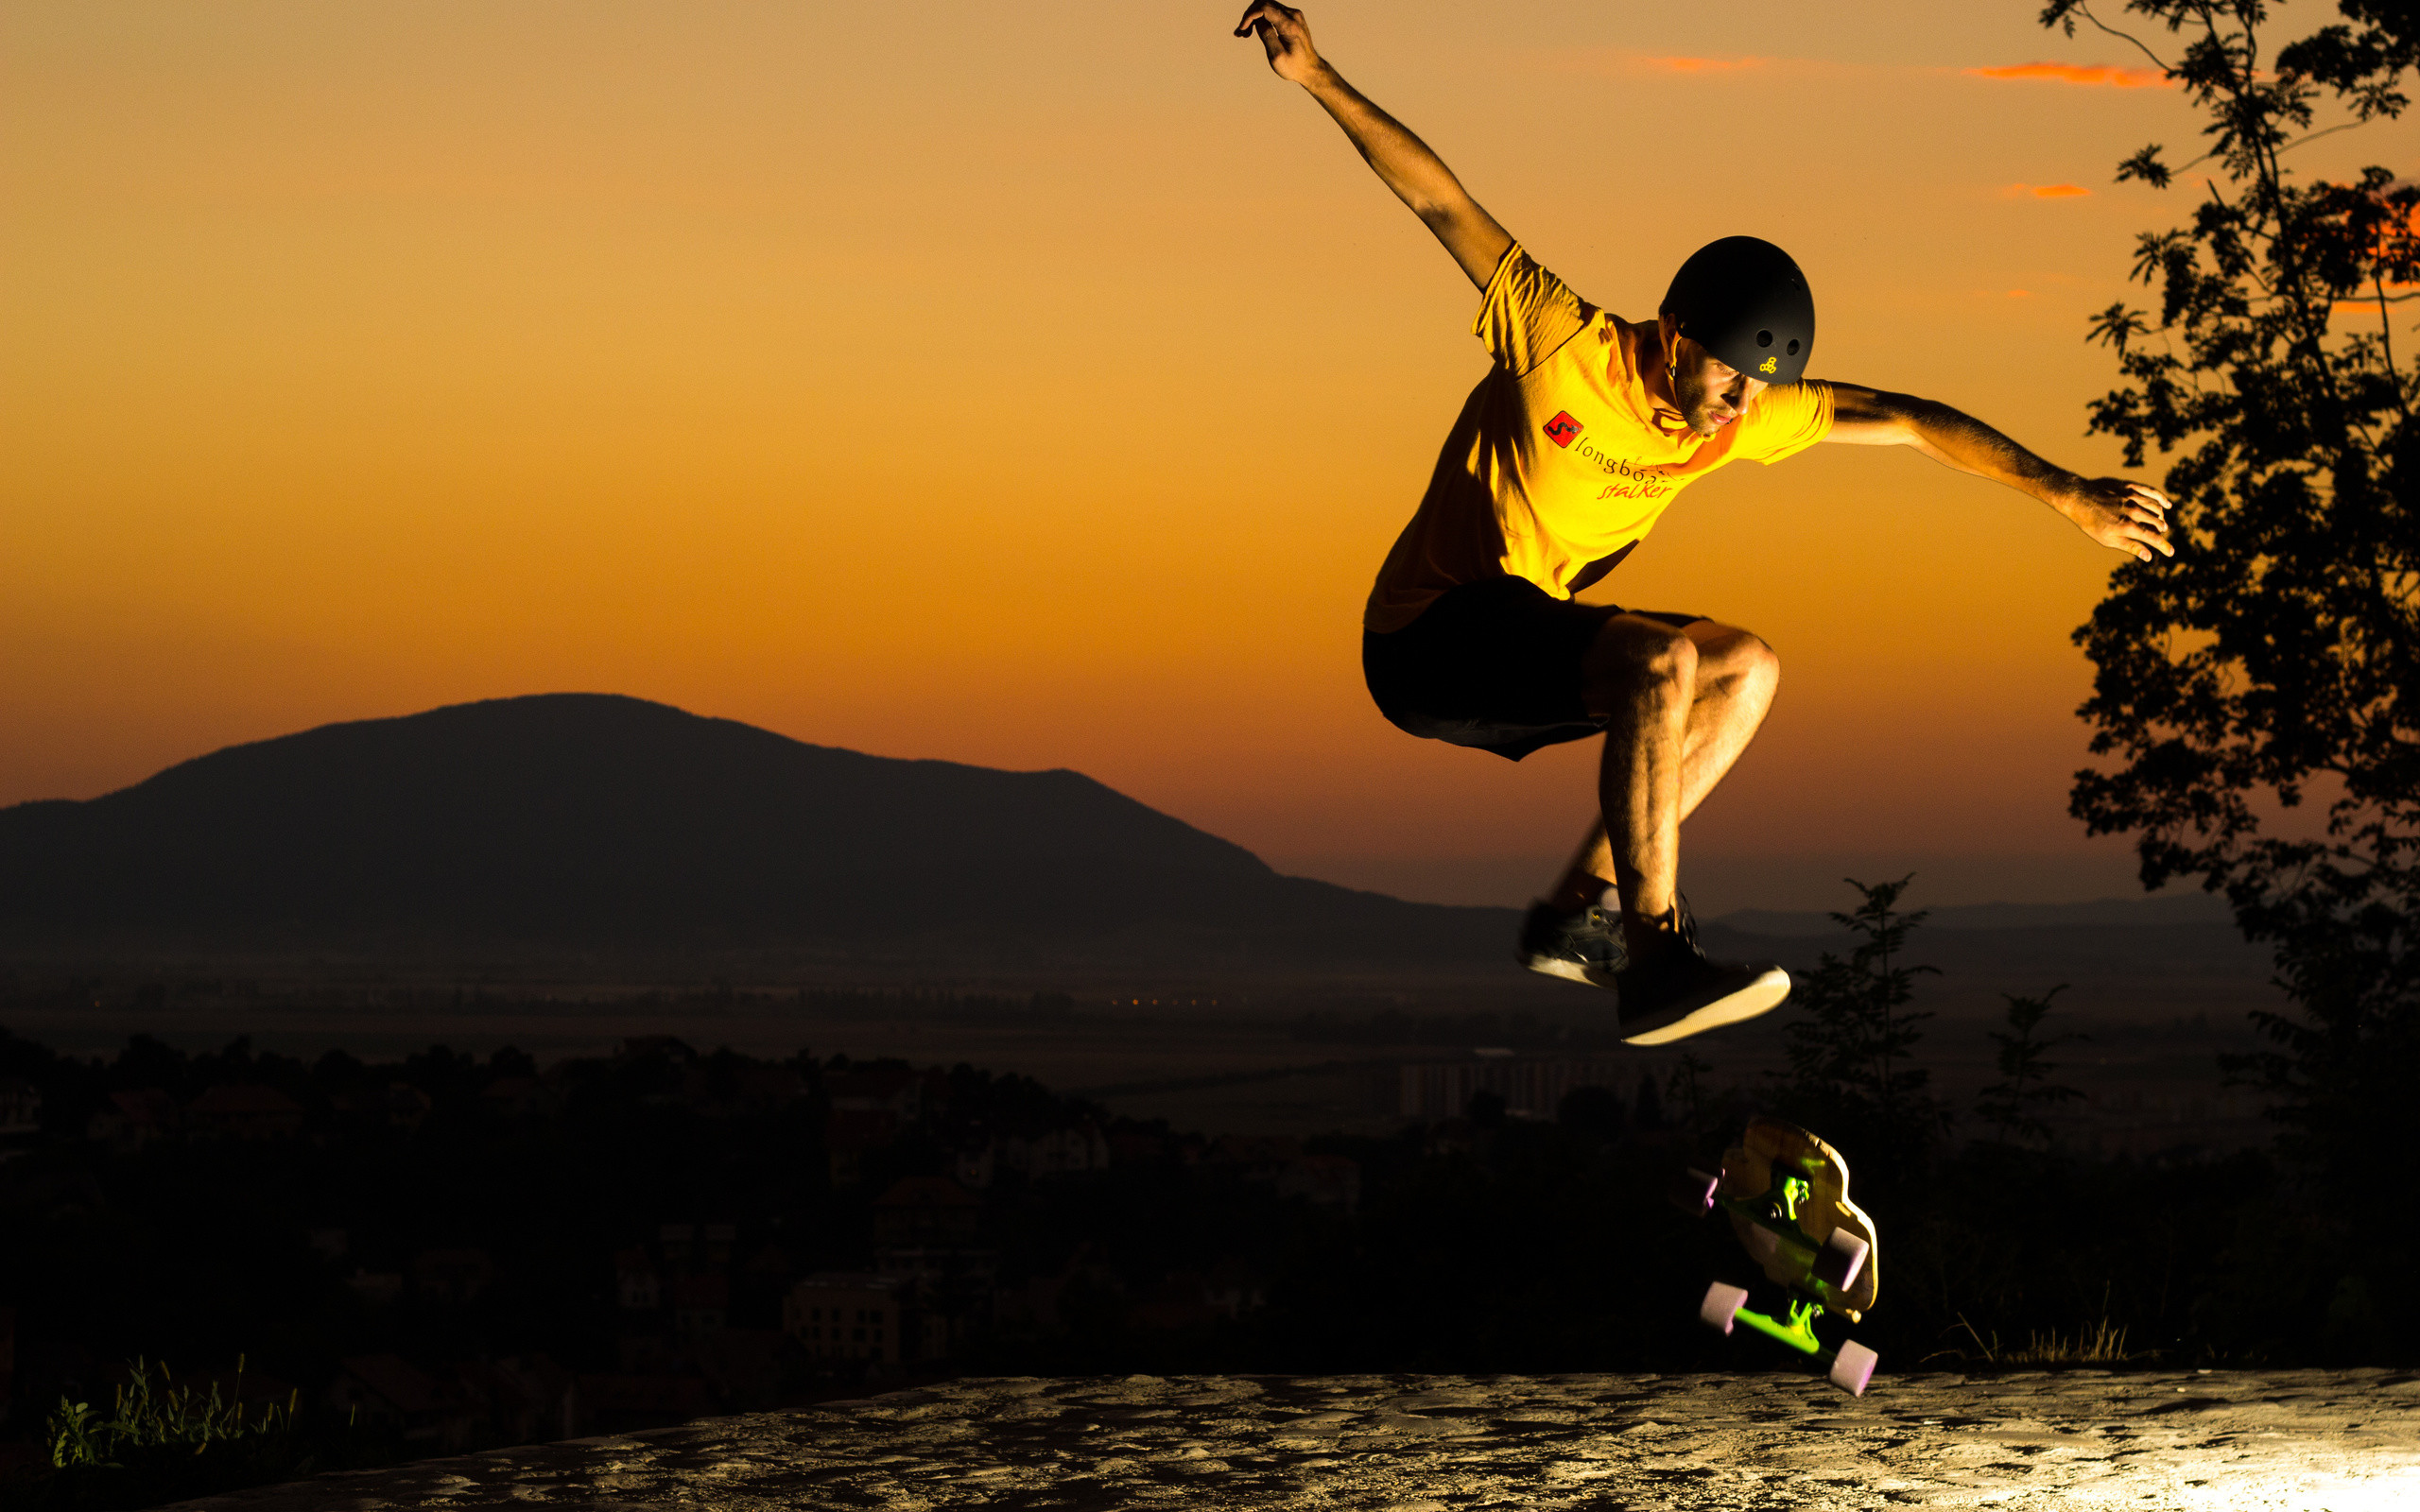 fantastici sfondi per skateboard,gli sport,sport estremo,ingannando,contento,salto